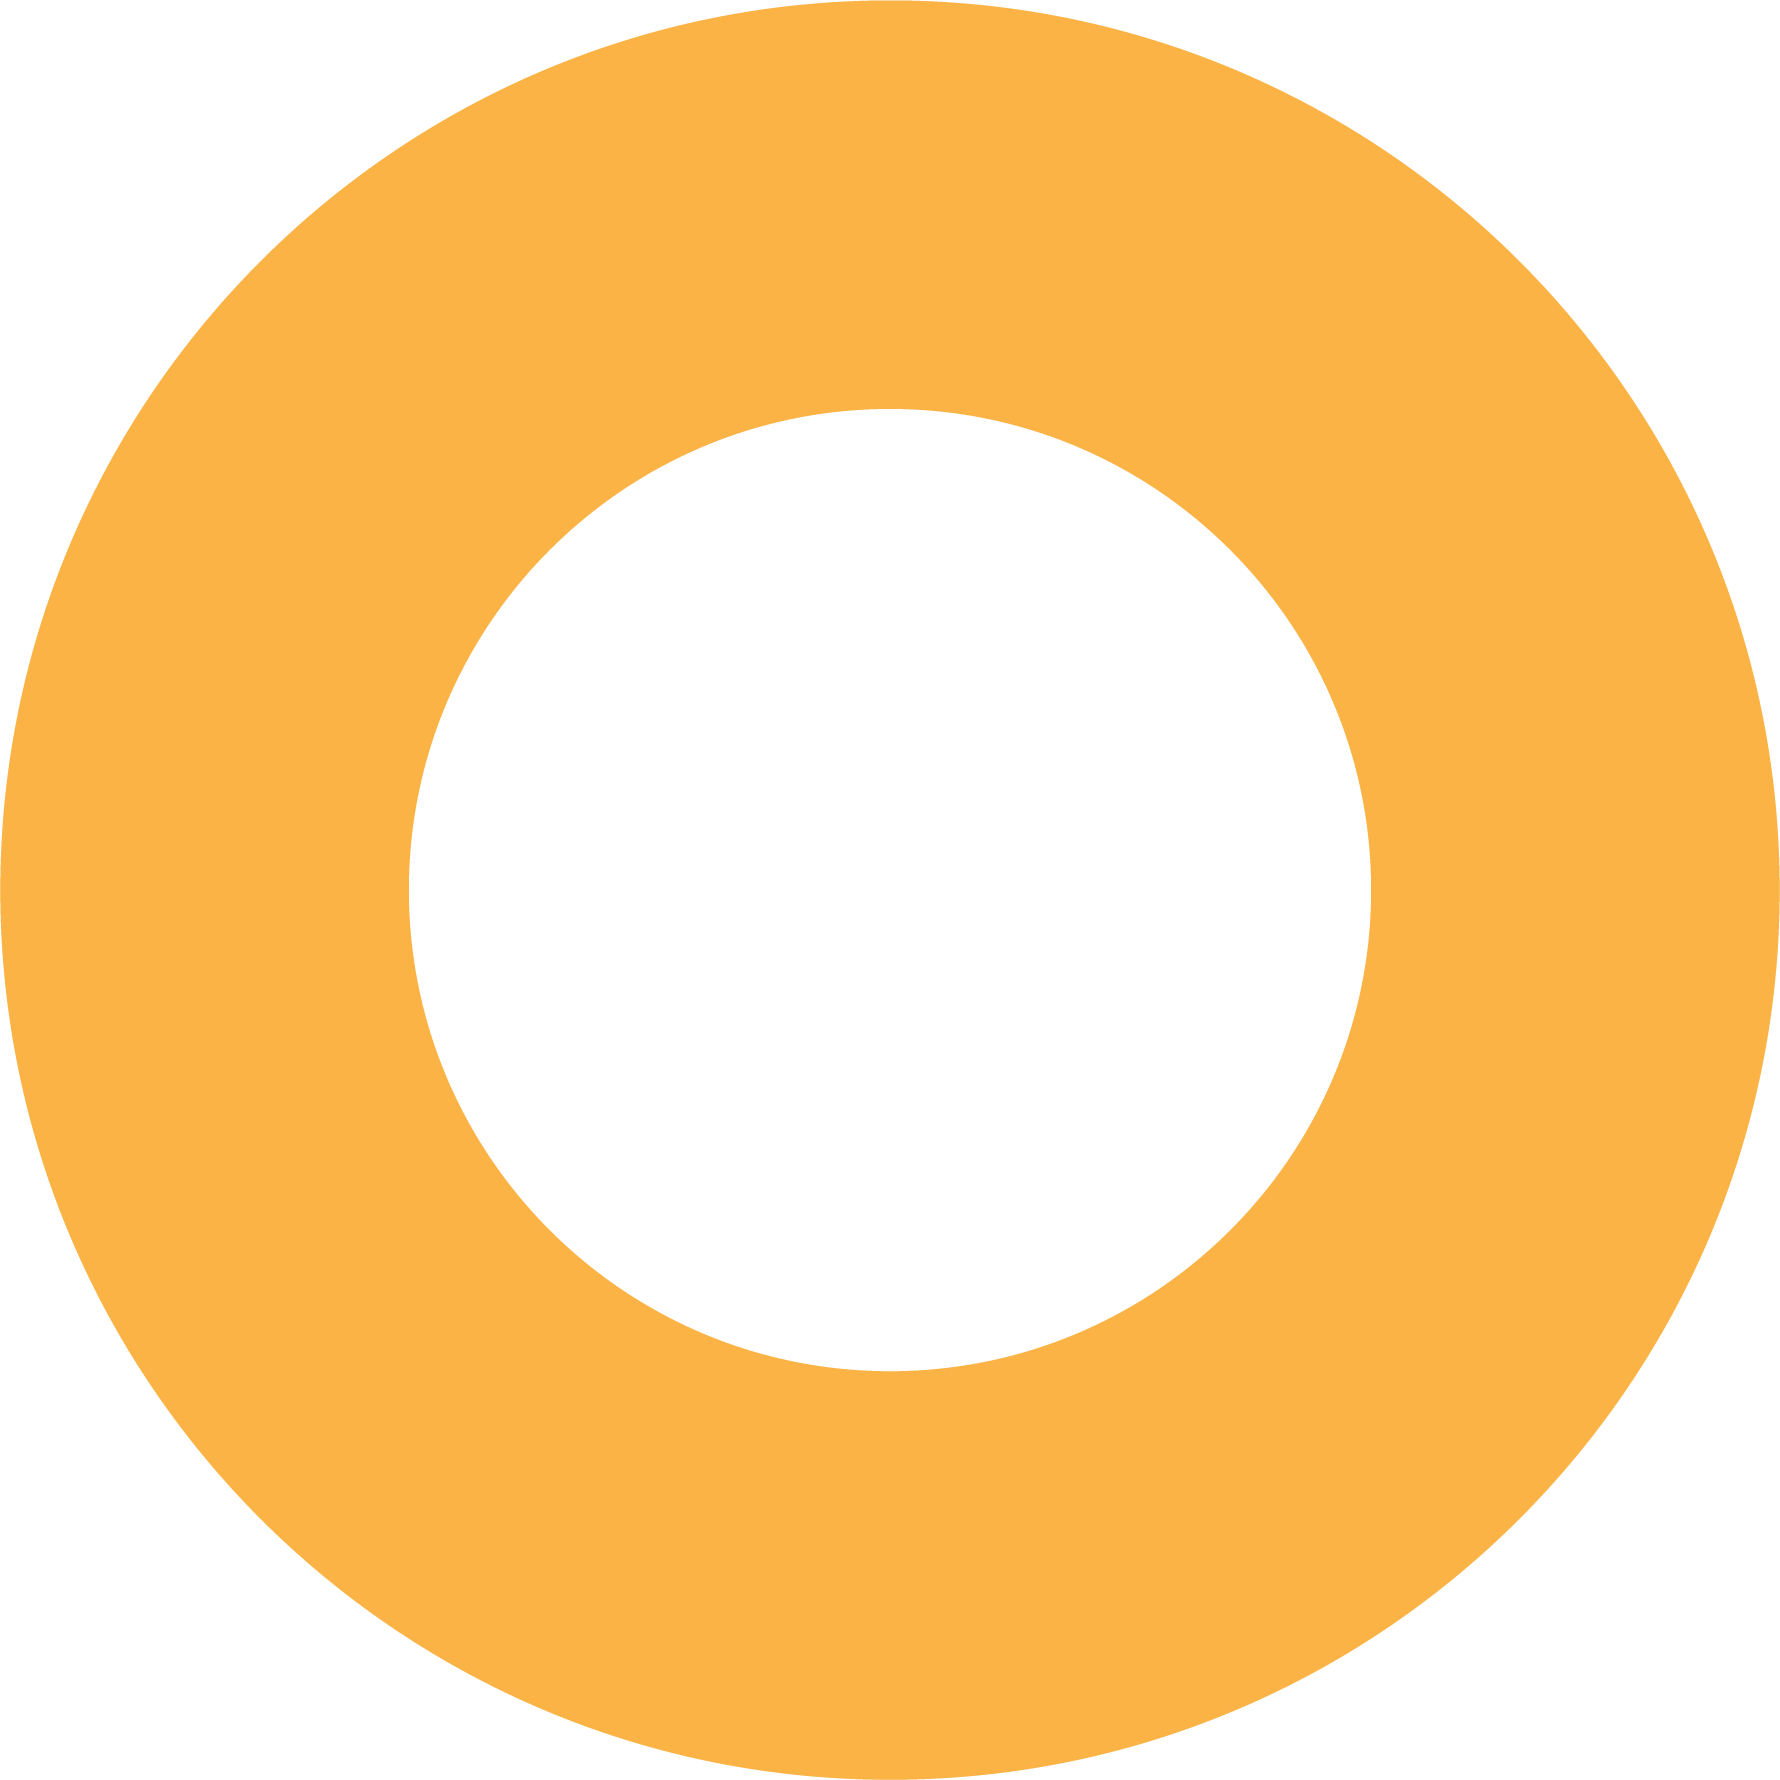 yellowcircle